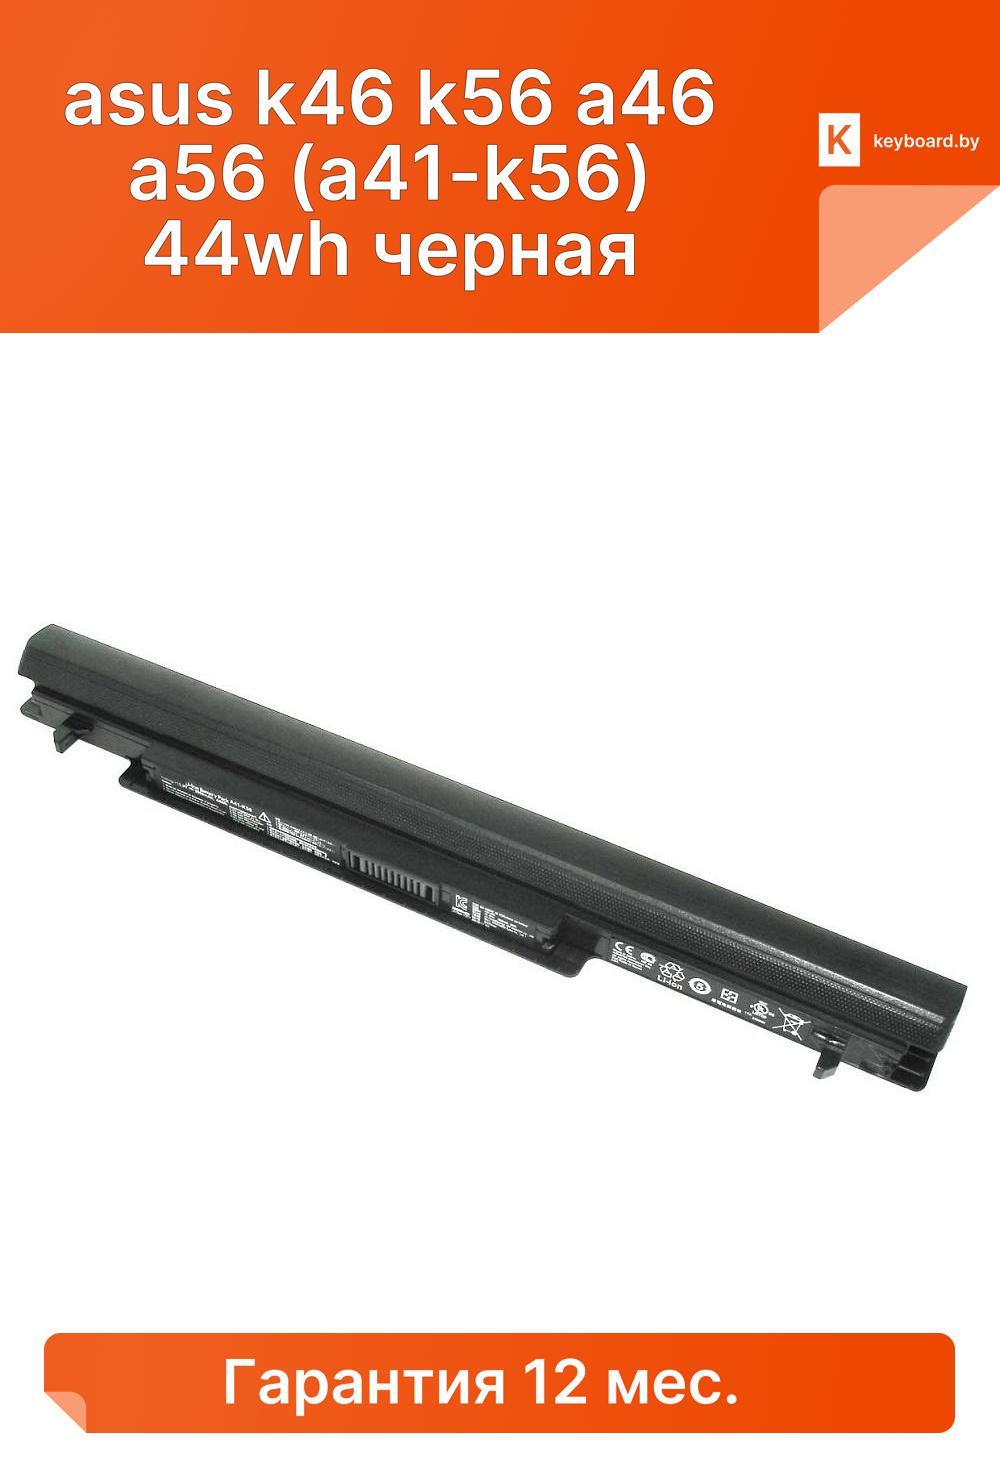 Аккумуляторная батарея для ноутбука asus k46 k56 a46 a56 (a41-k56) 44wh черная